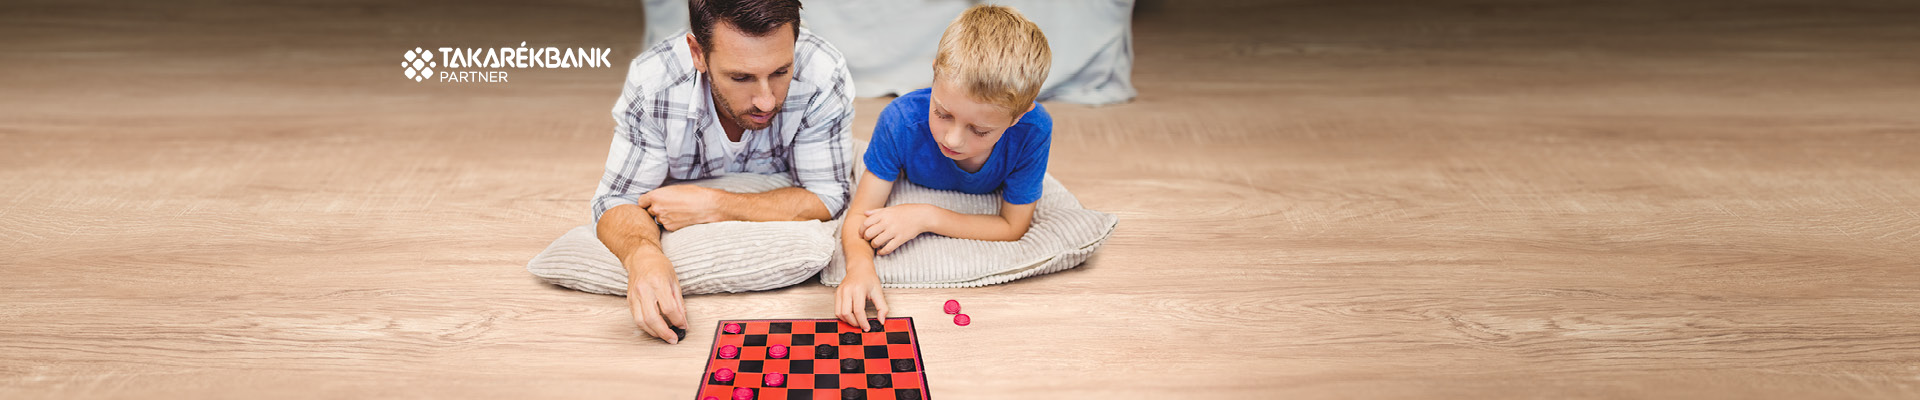 A képen egy férfi és egy kisfiú látható, akik dáma társasjátékot játszanak.